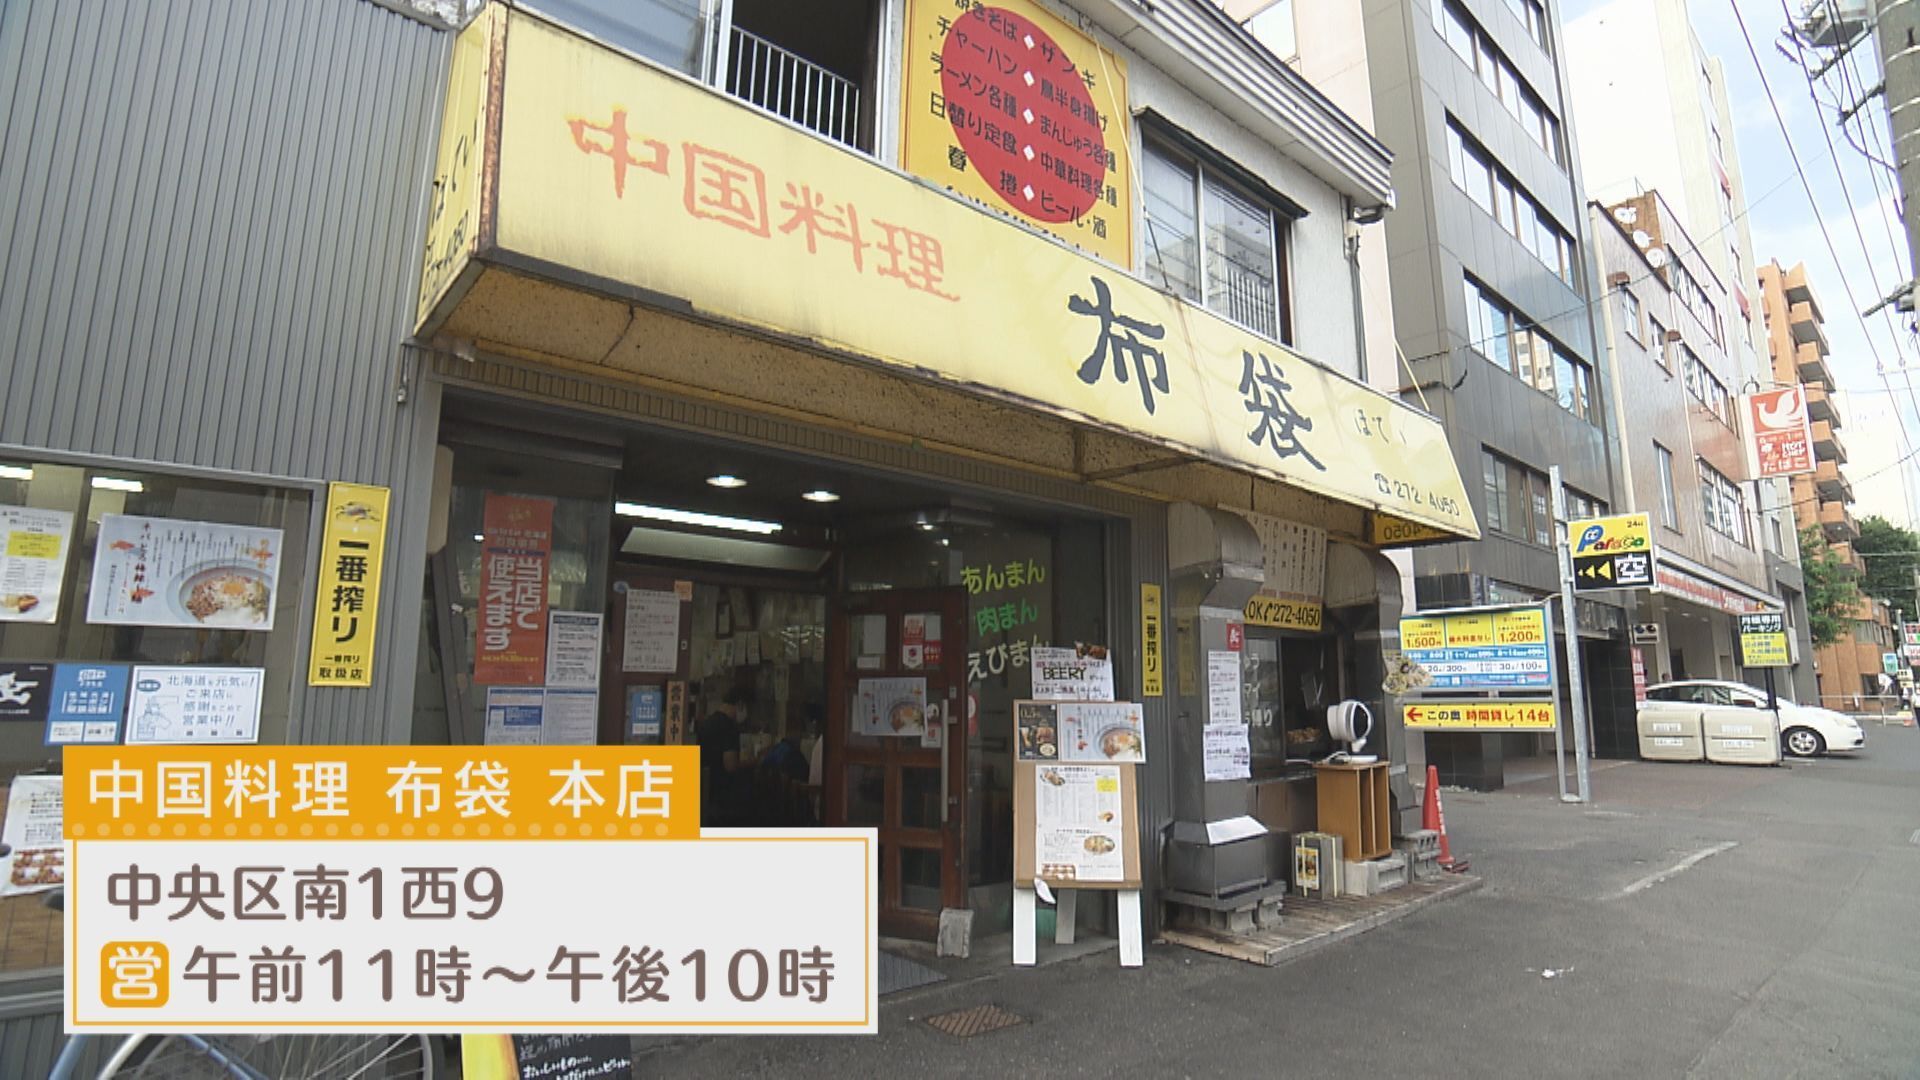 札幌の中華の名店 布袋 が挑む 初のスイーツ専門店がオープン Sitakke したっけ